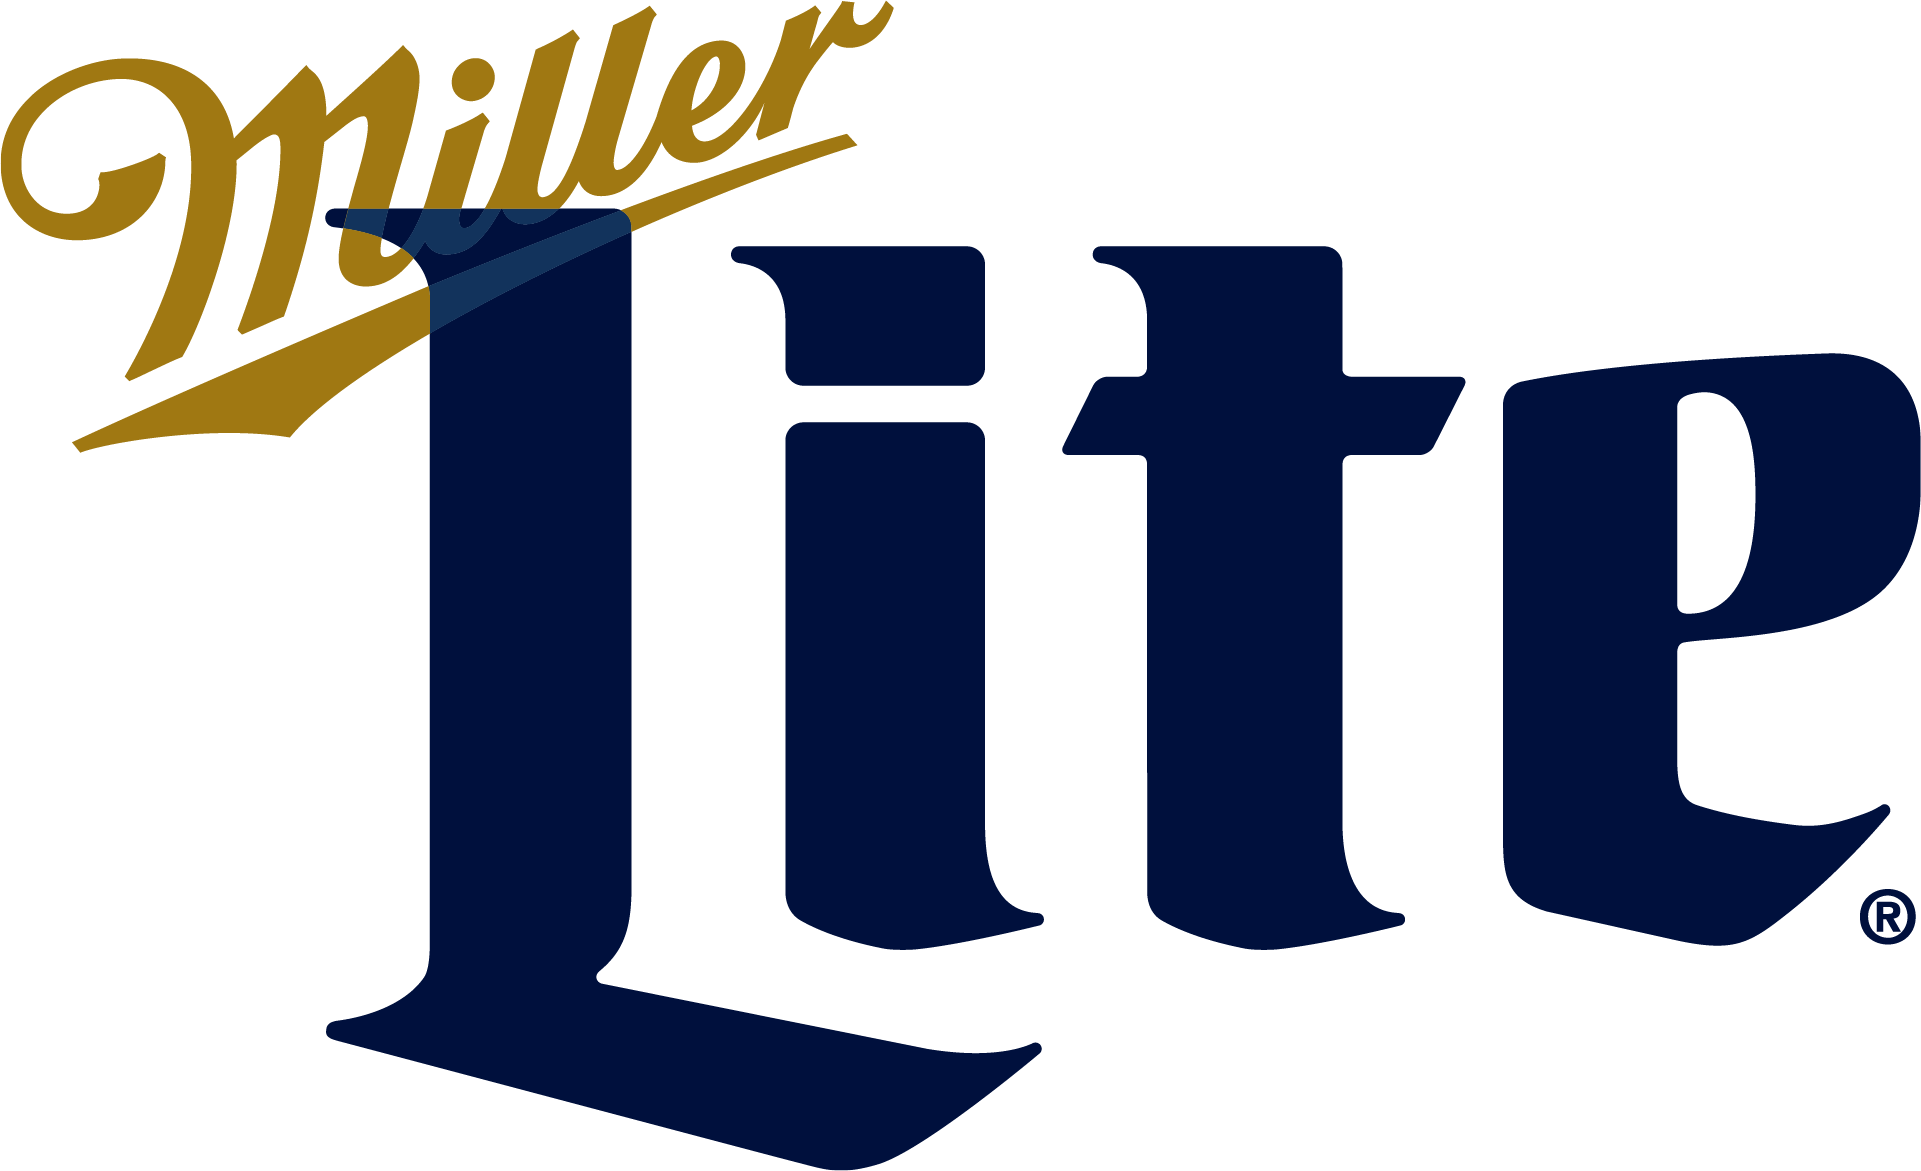 MillerLite